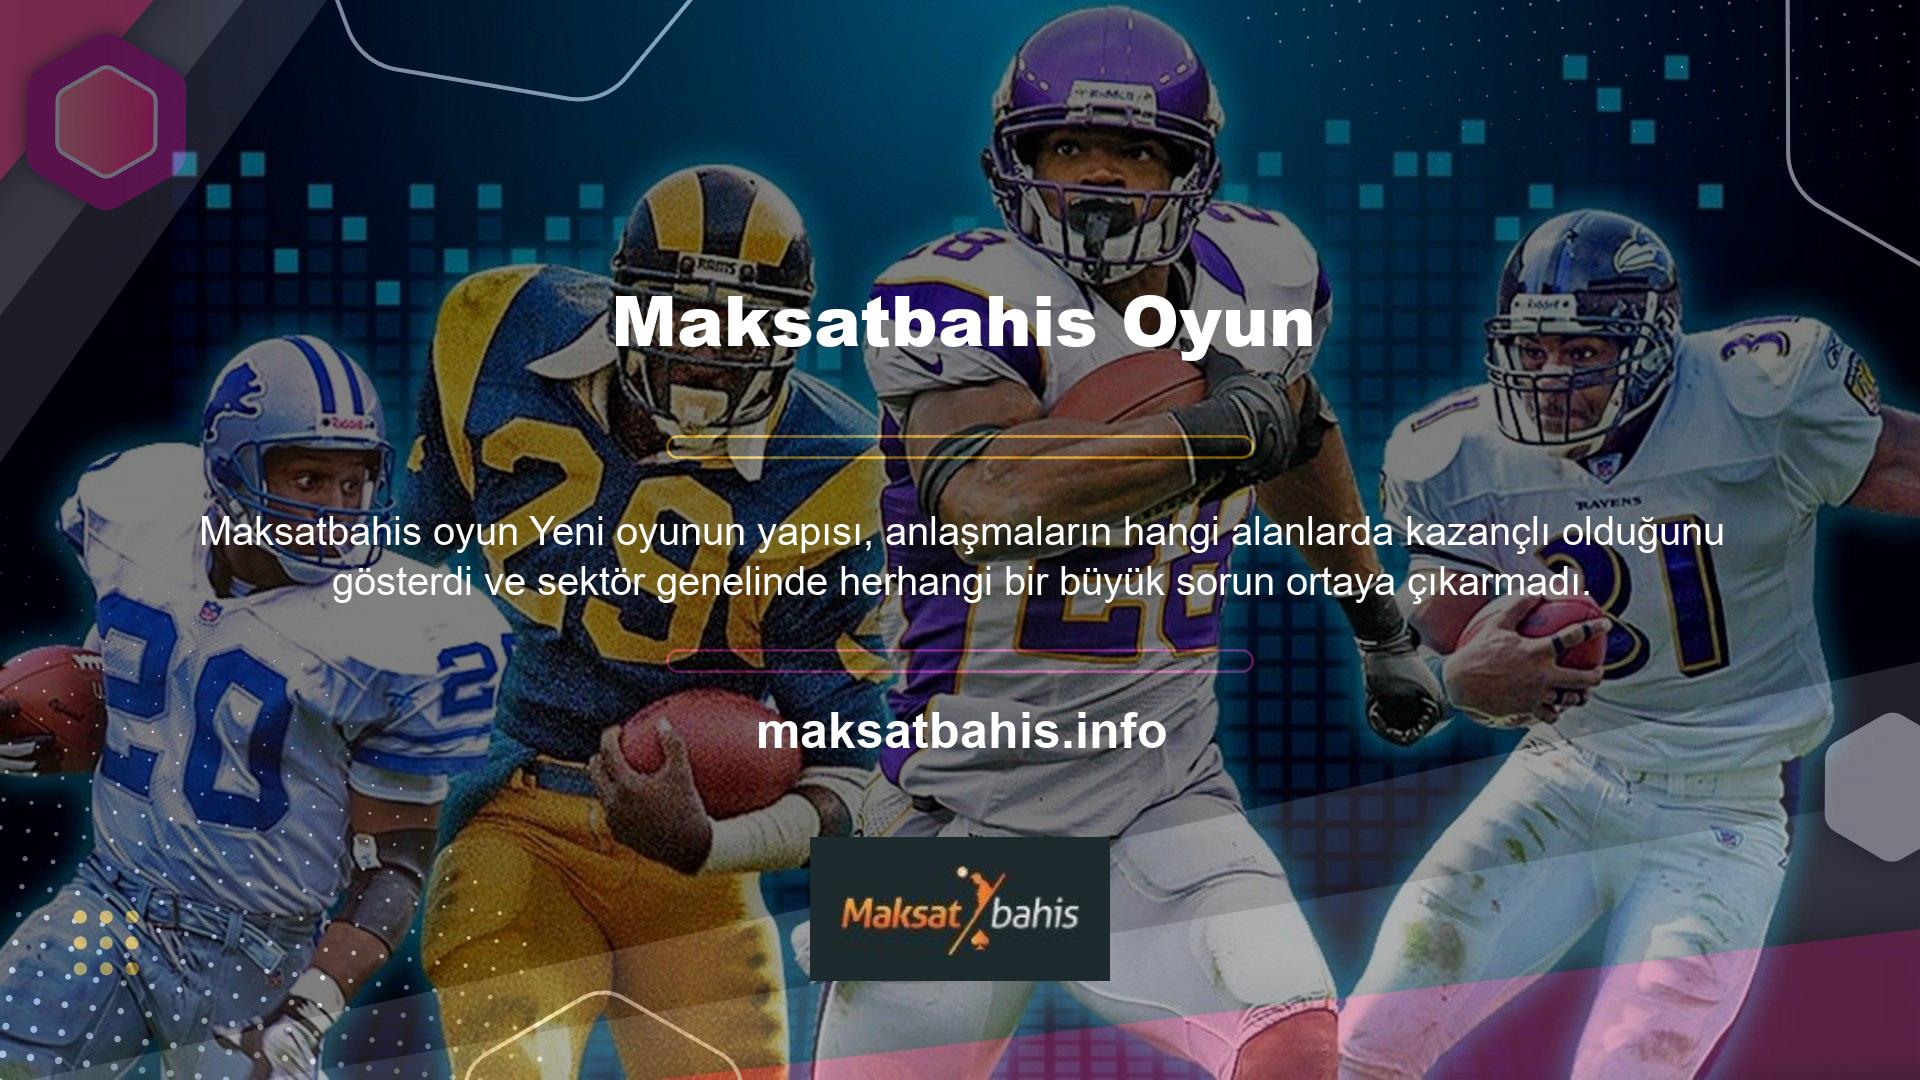 Aslında aktif bilgilere bakıldığında Maksatbahis Sportsbook, müşterilerine başta futbol olmak üzere farklı sektör için güncel değerler hakkında güncel veriler sunmaktadır